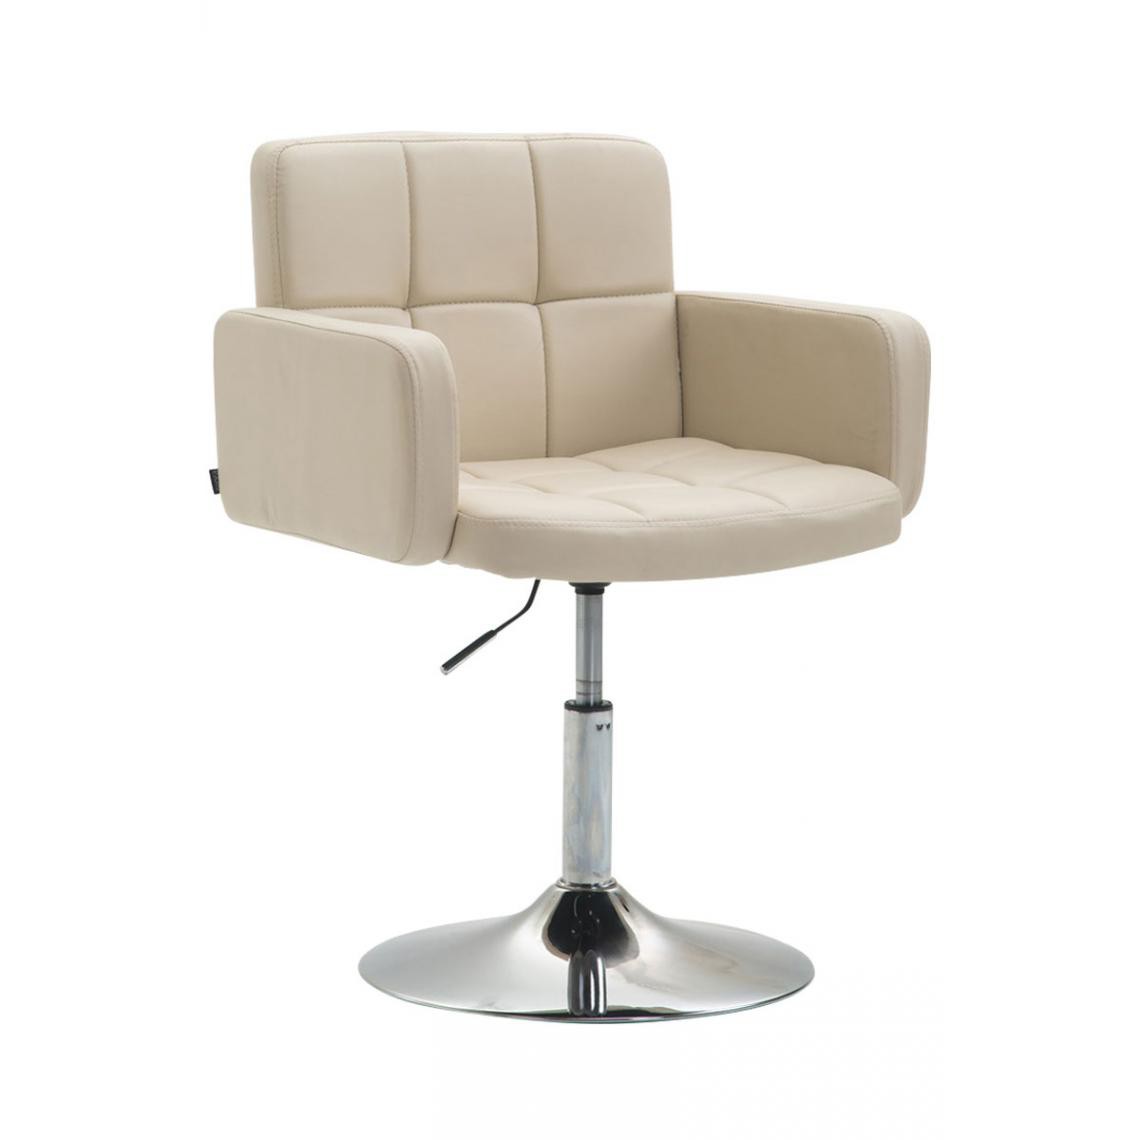 Icaverne - Moderne Chaise longue Nouakchott Angeles en cuir synthétique couleur crème - Transats, chaises longues